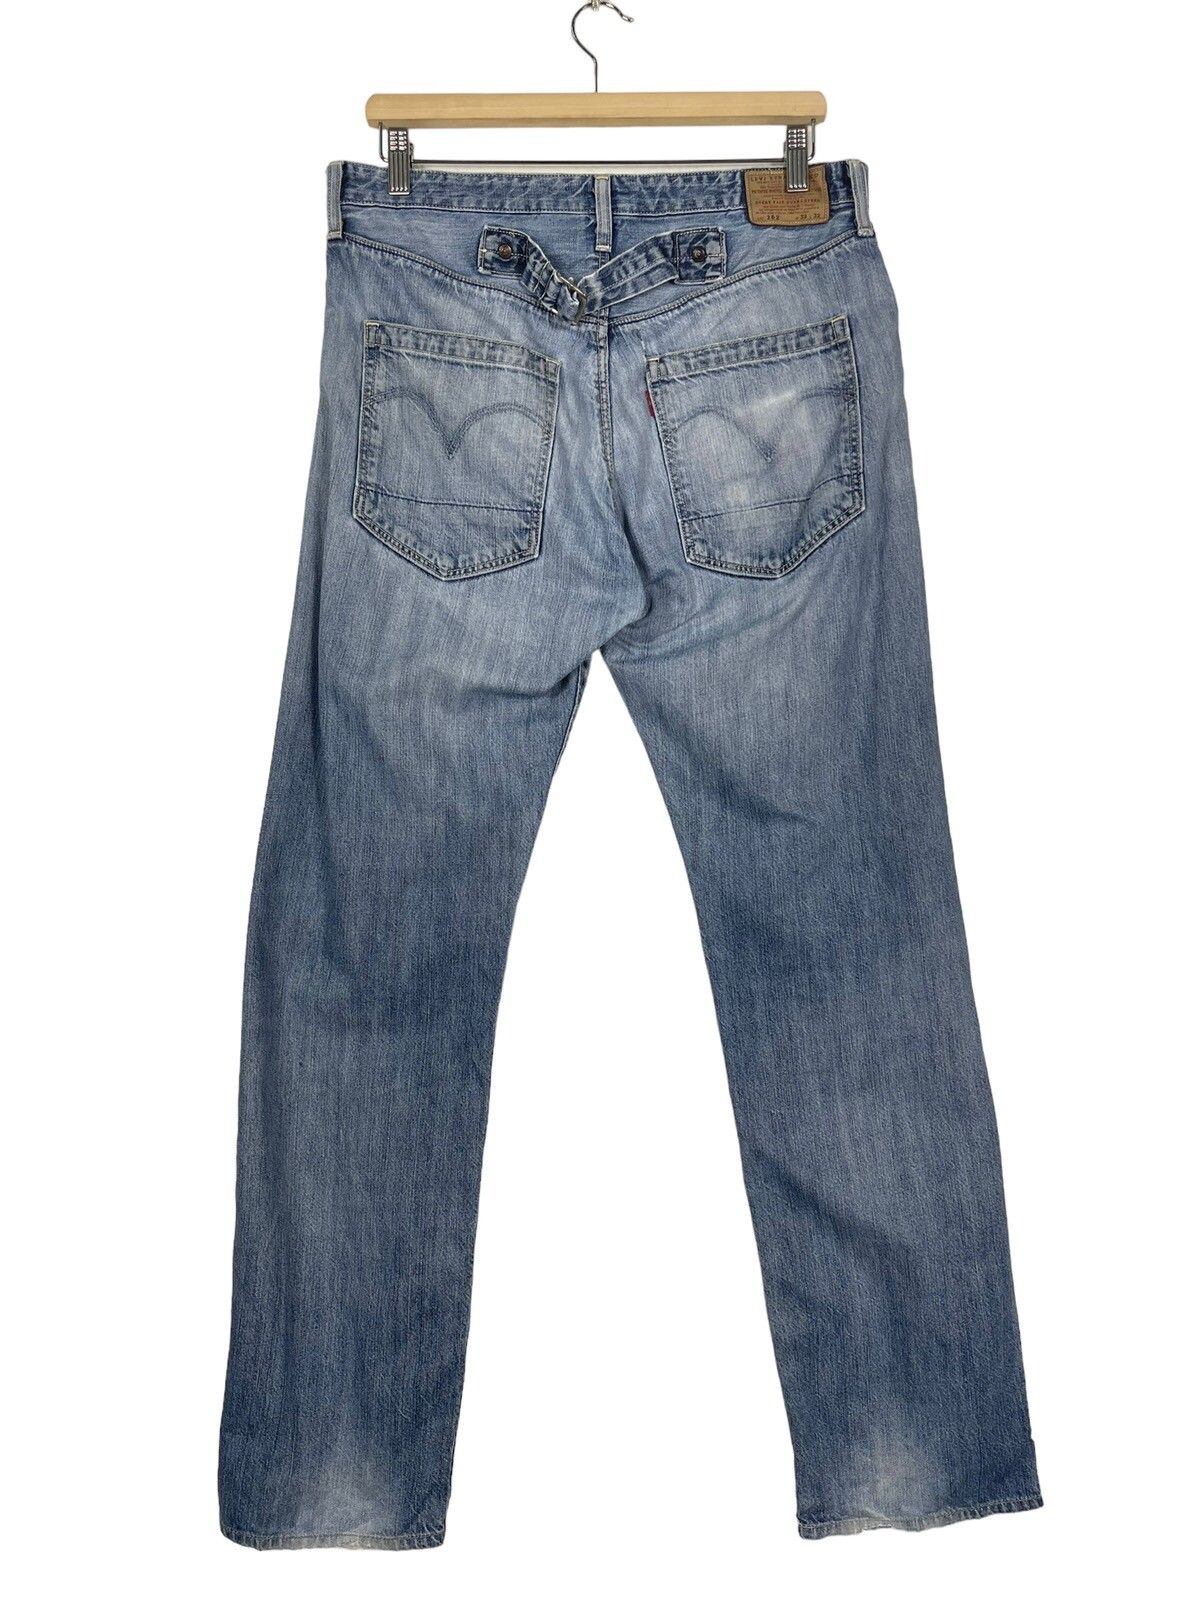 Vintage Levis Classic Lot 202 Jeans - 7